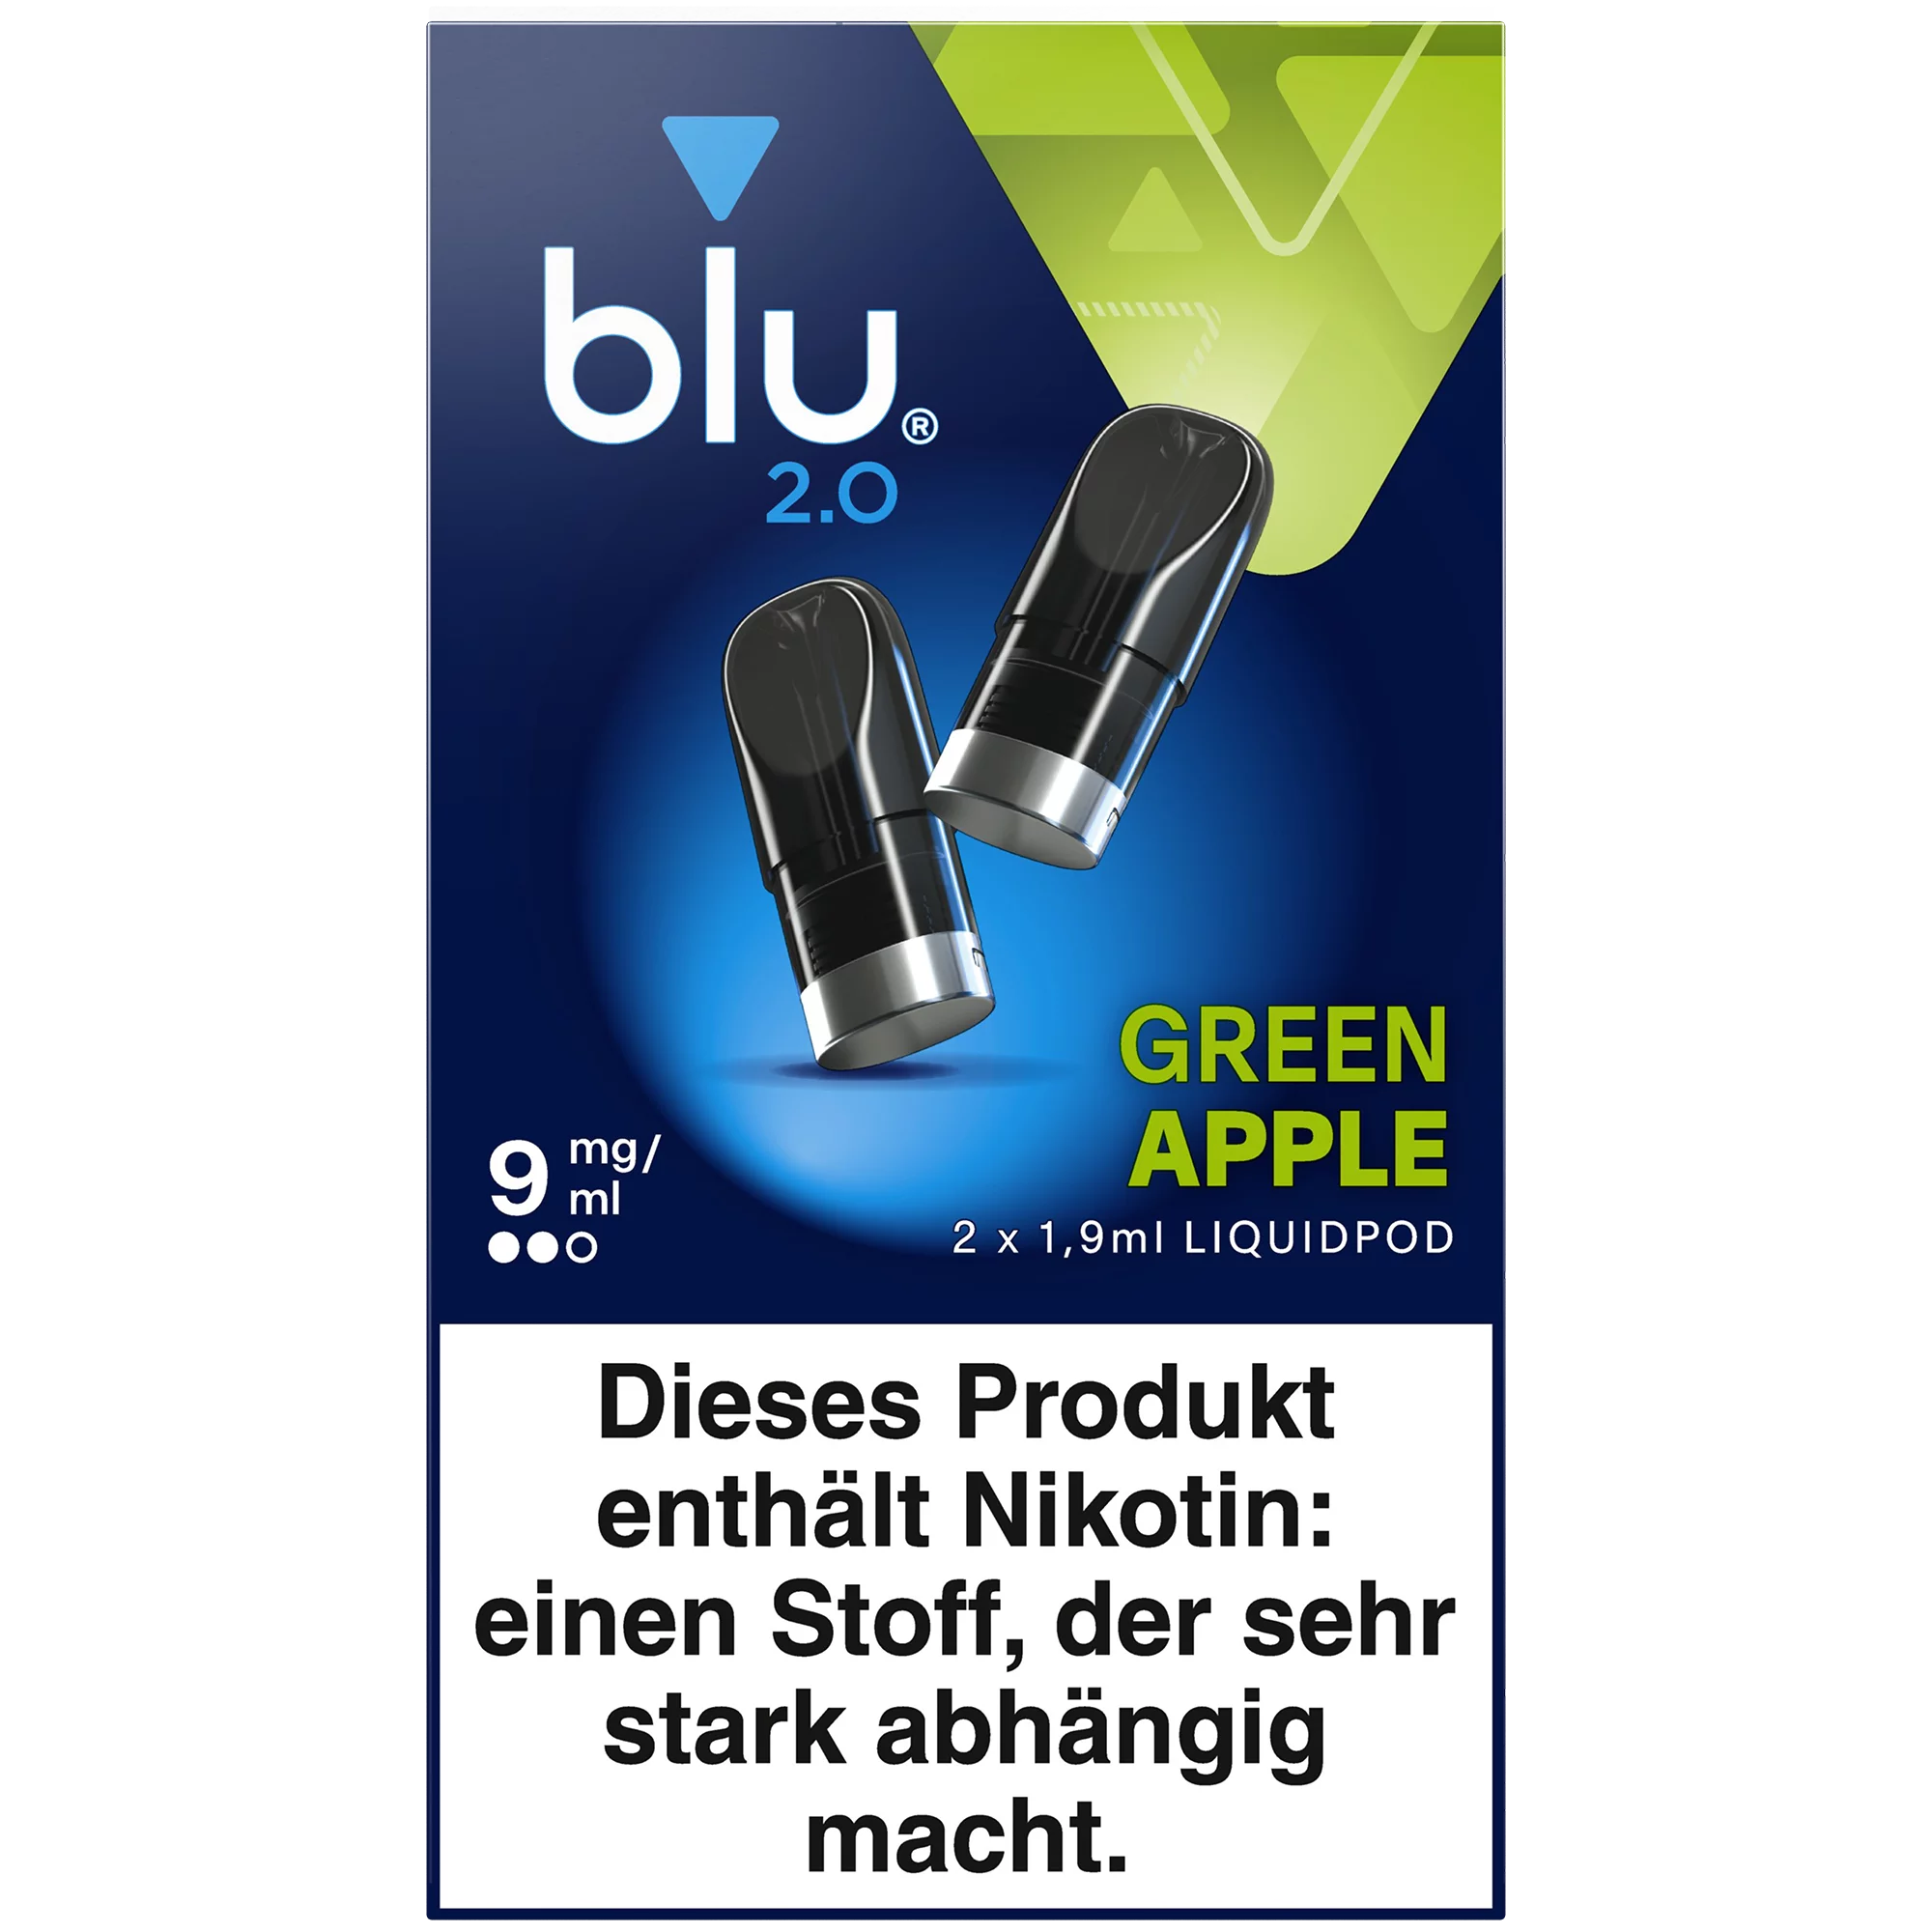 blu 2.0 Liquidpod Green Apple 9mg/ml